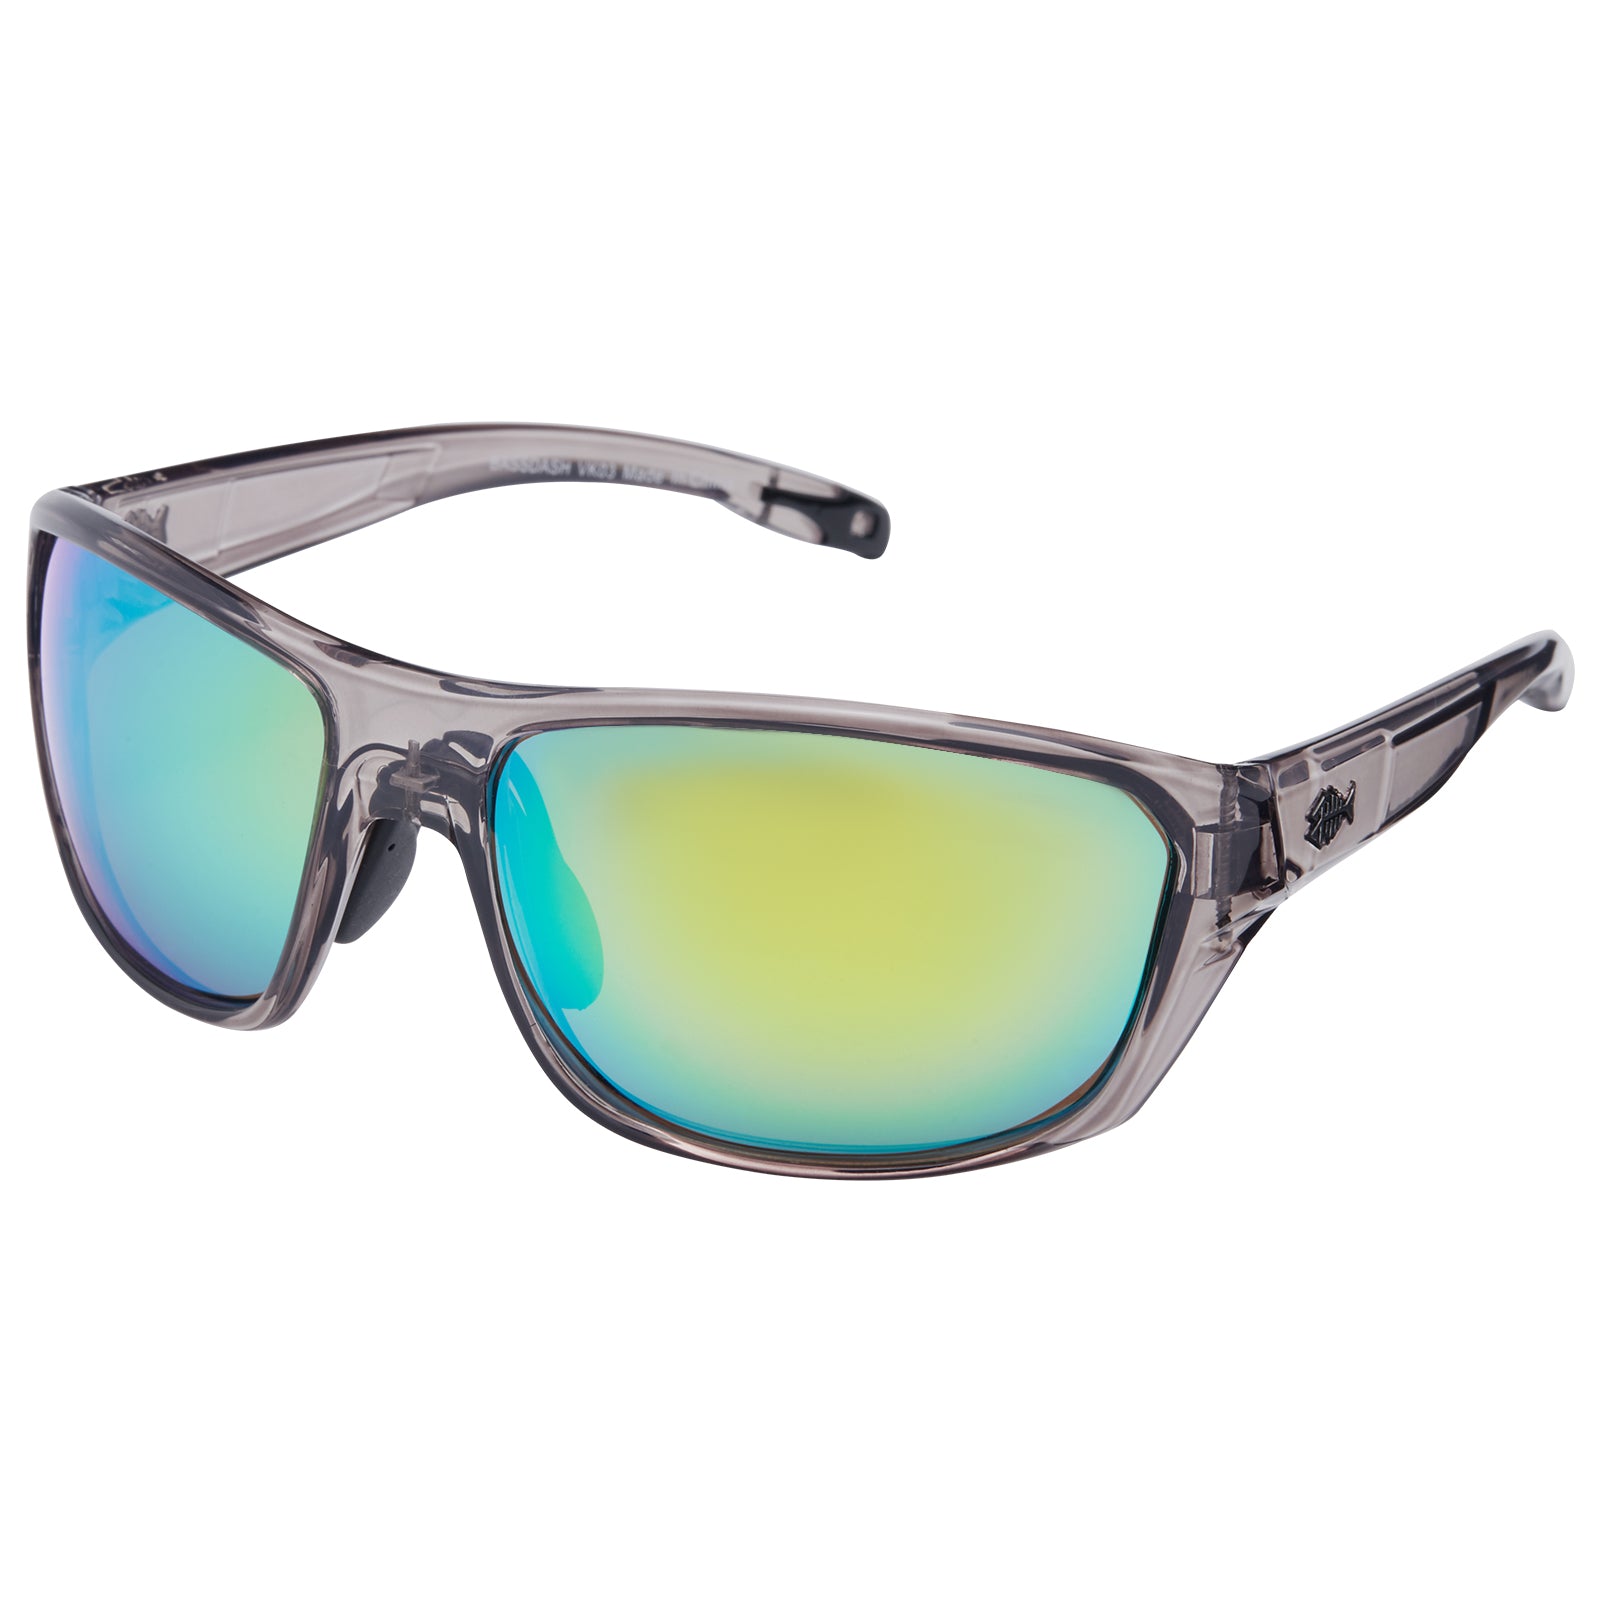 Polarized Fishing Sunglasses for men women